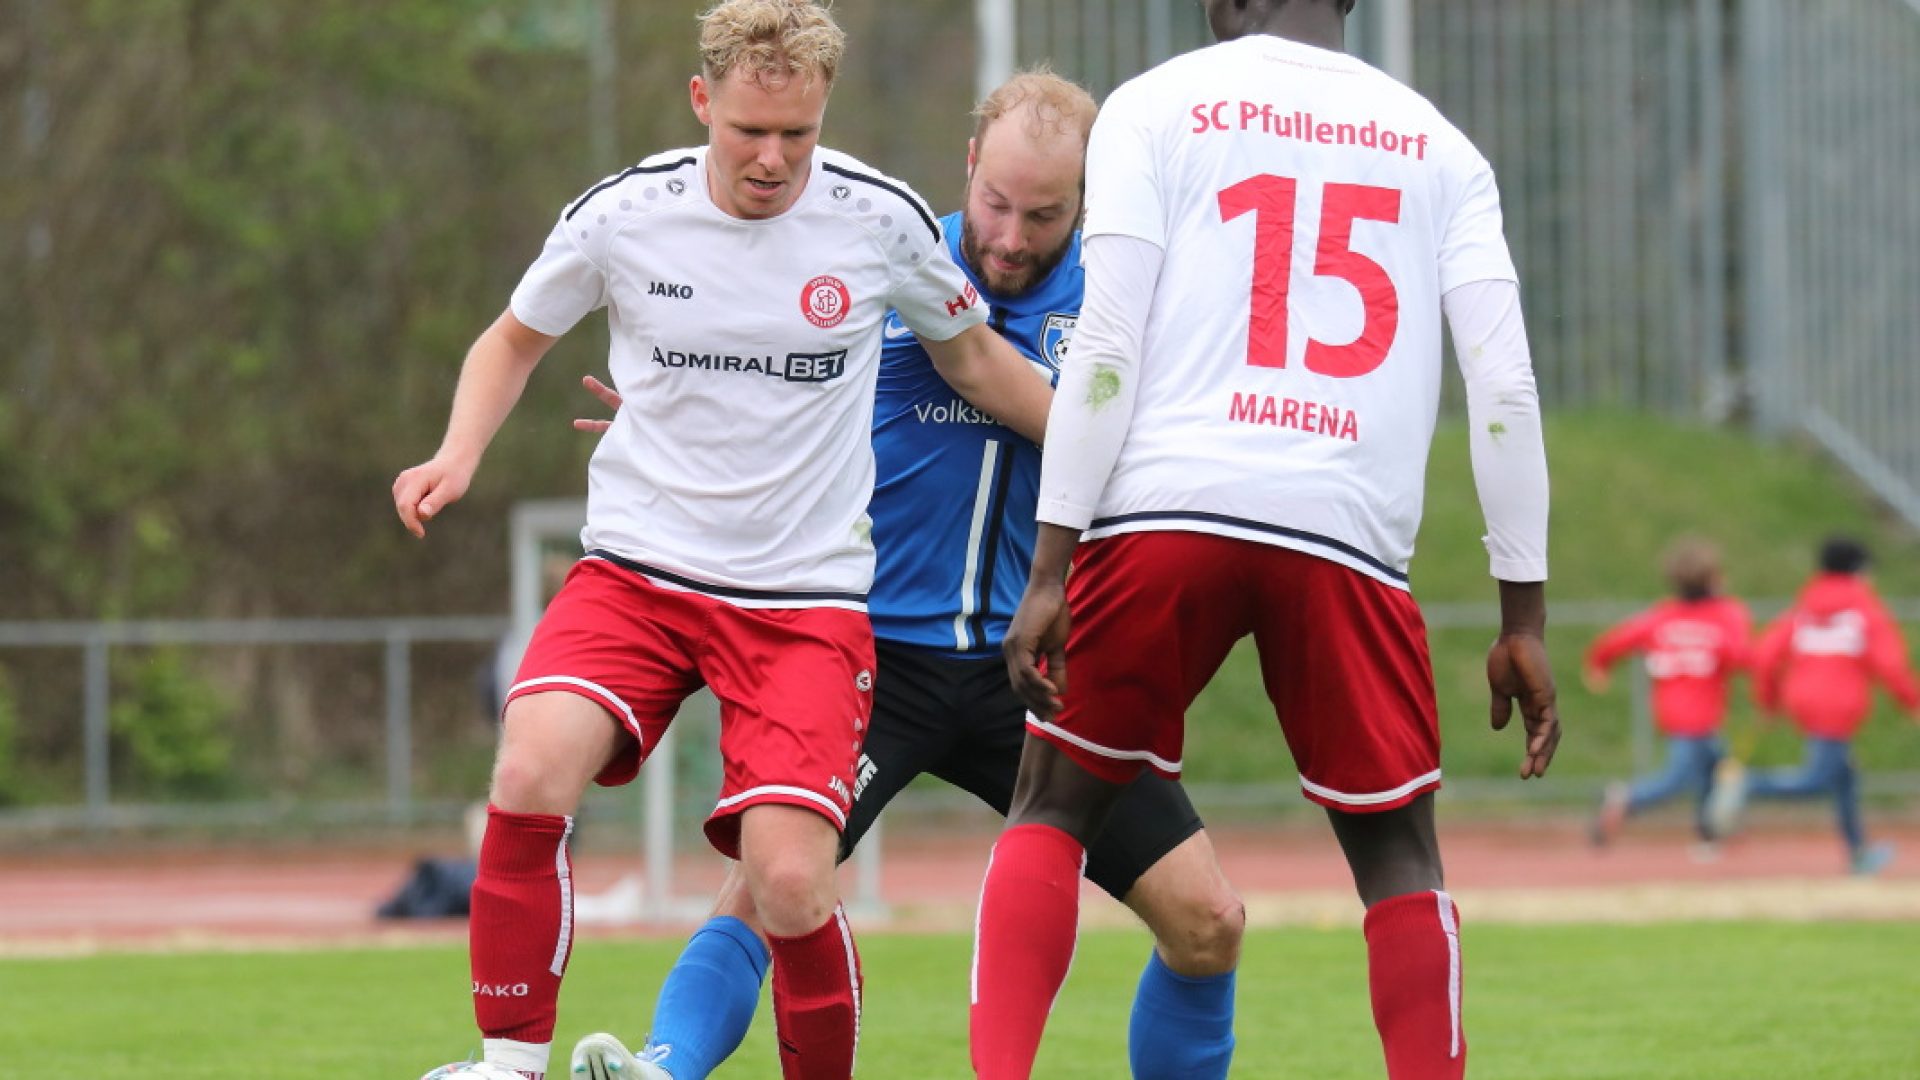 SBFV Verbandsliga Südbaden 2021/22
23.04.2022
SC Pfullendorf - SC Lahr 2:2 (2:1)